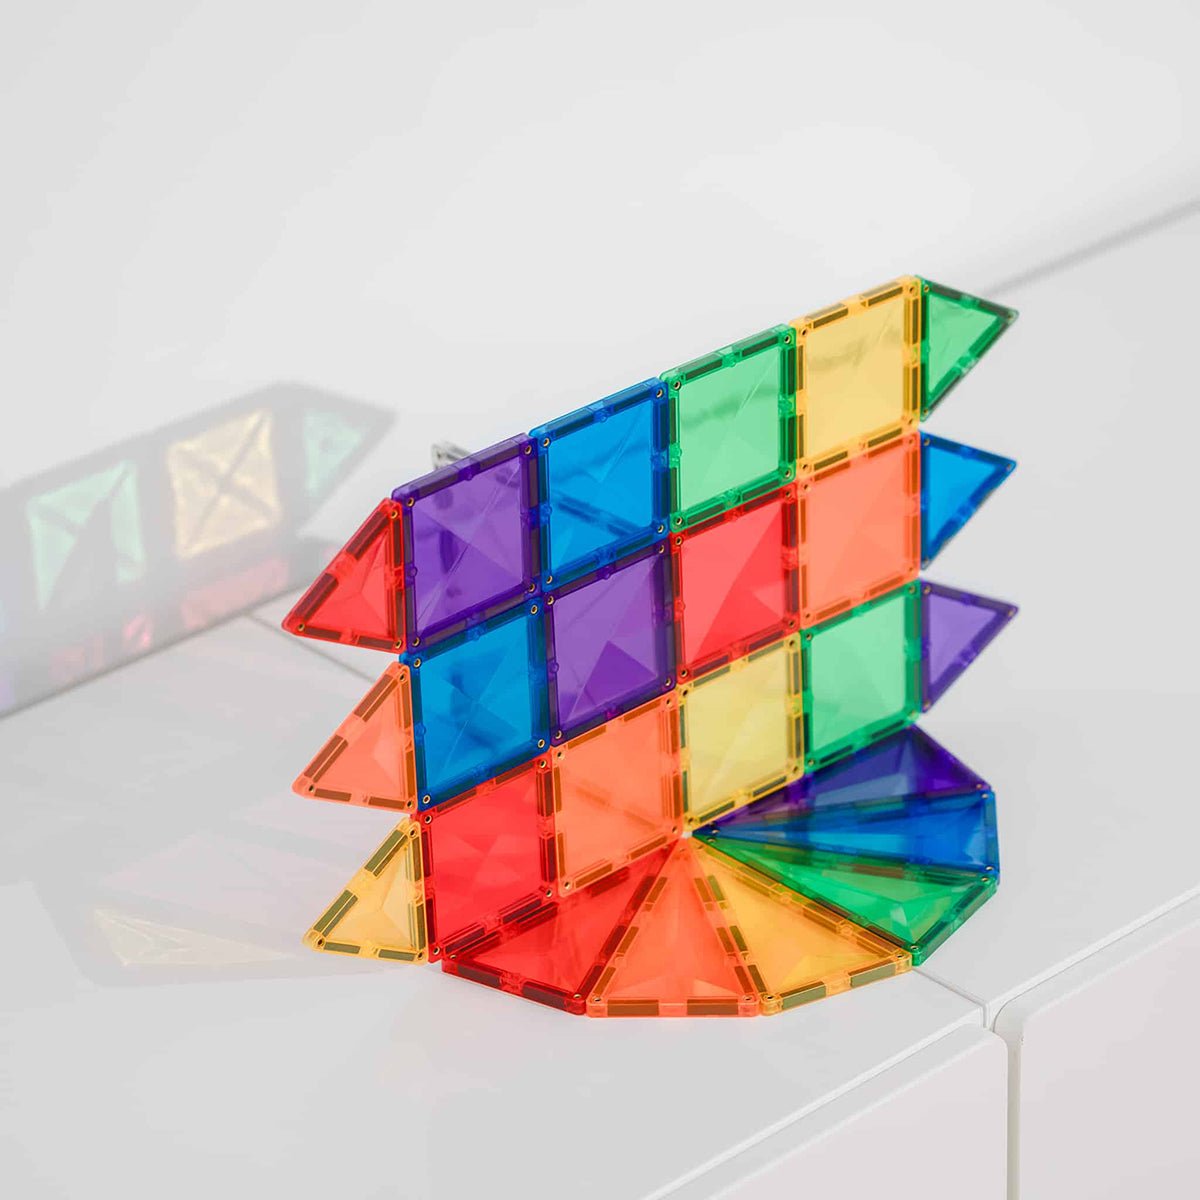 Connetix Mini Pack Rainbow 24 pc | Connetix tiles